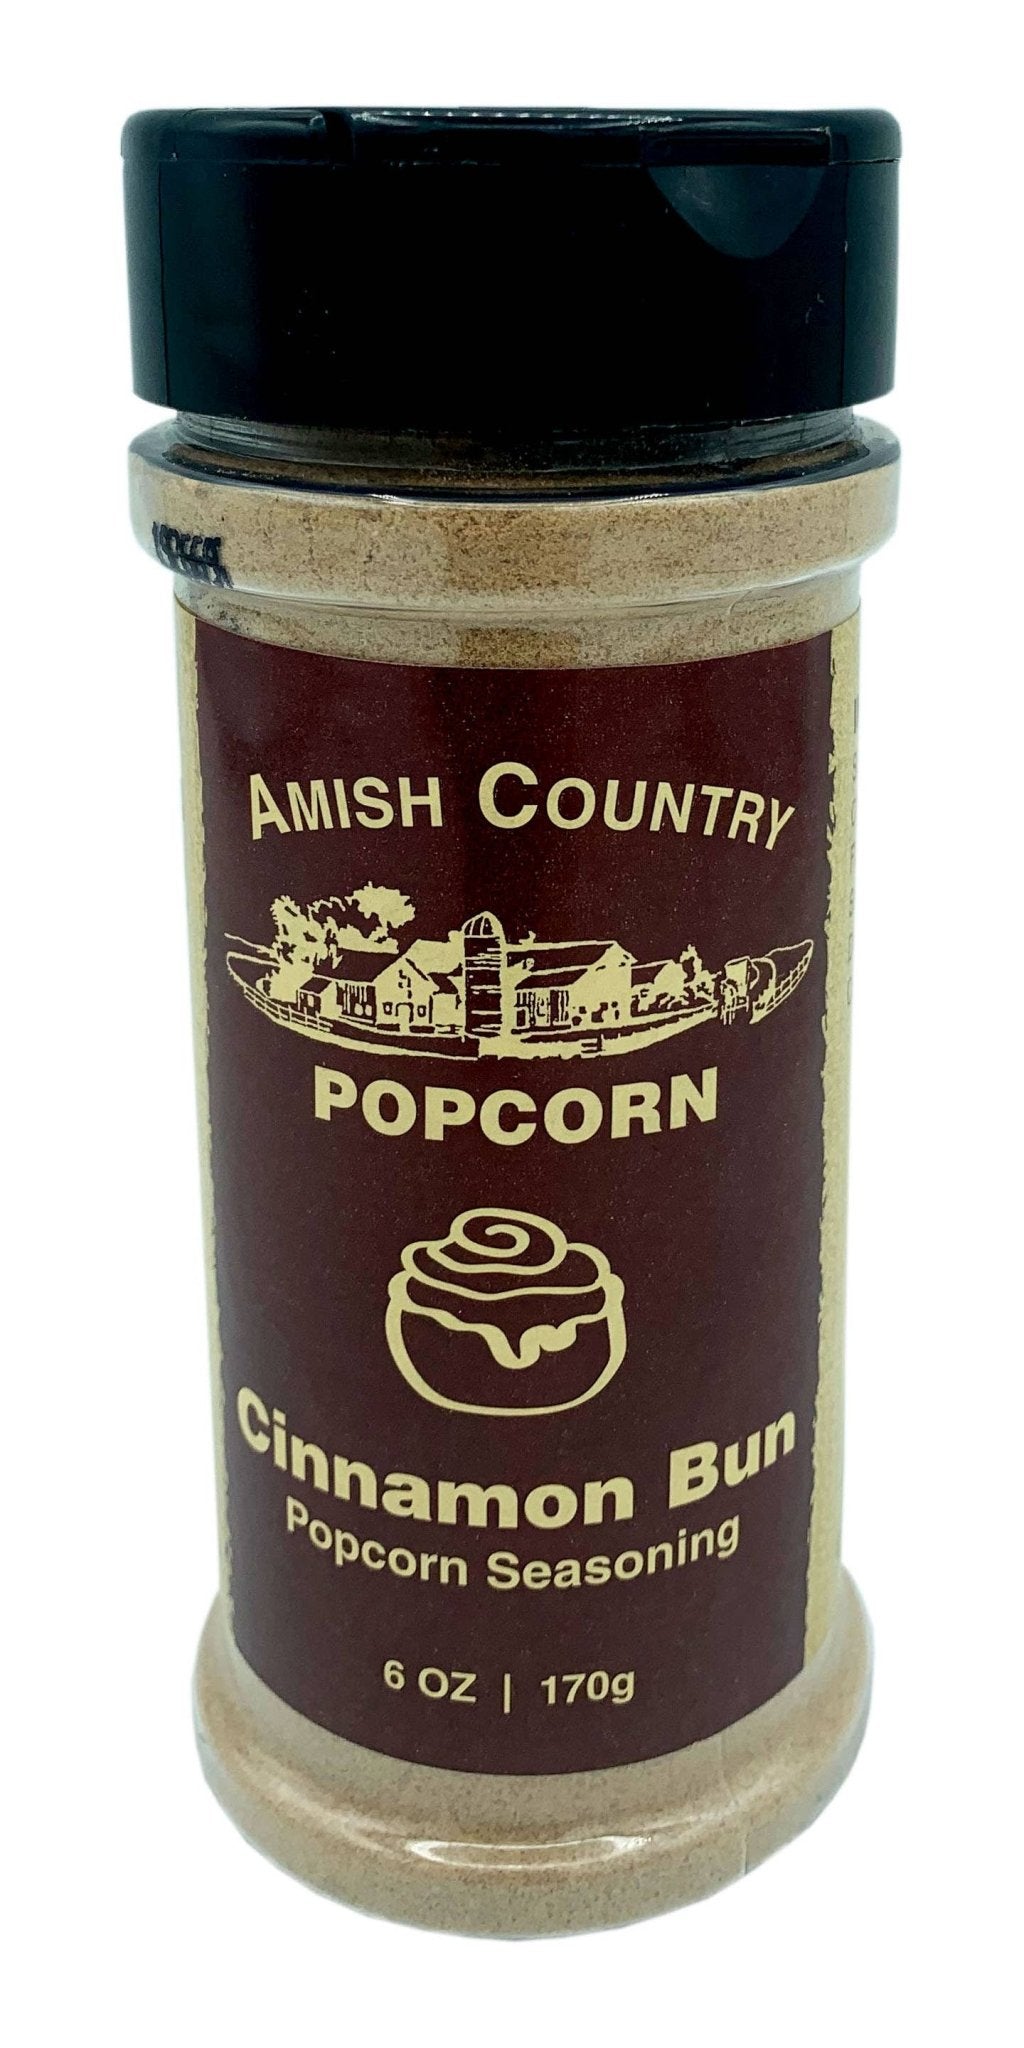 Amish Country Popcorn - Cinnamon Bun Popcorn Seasoning - Pacific Flyway Supplies